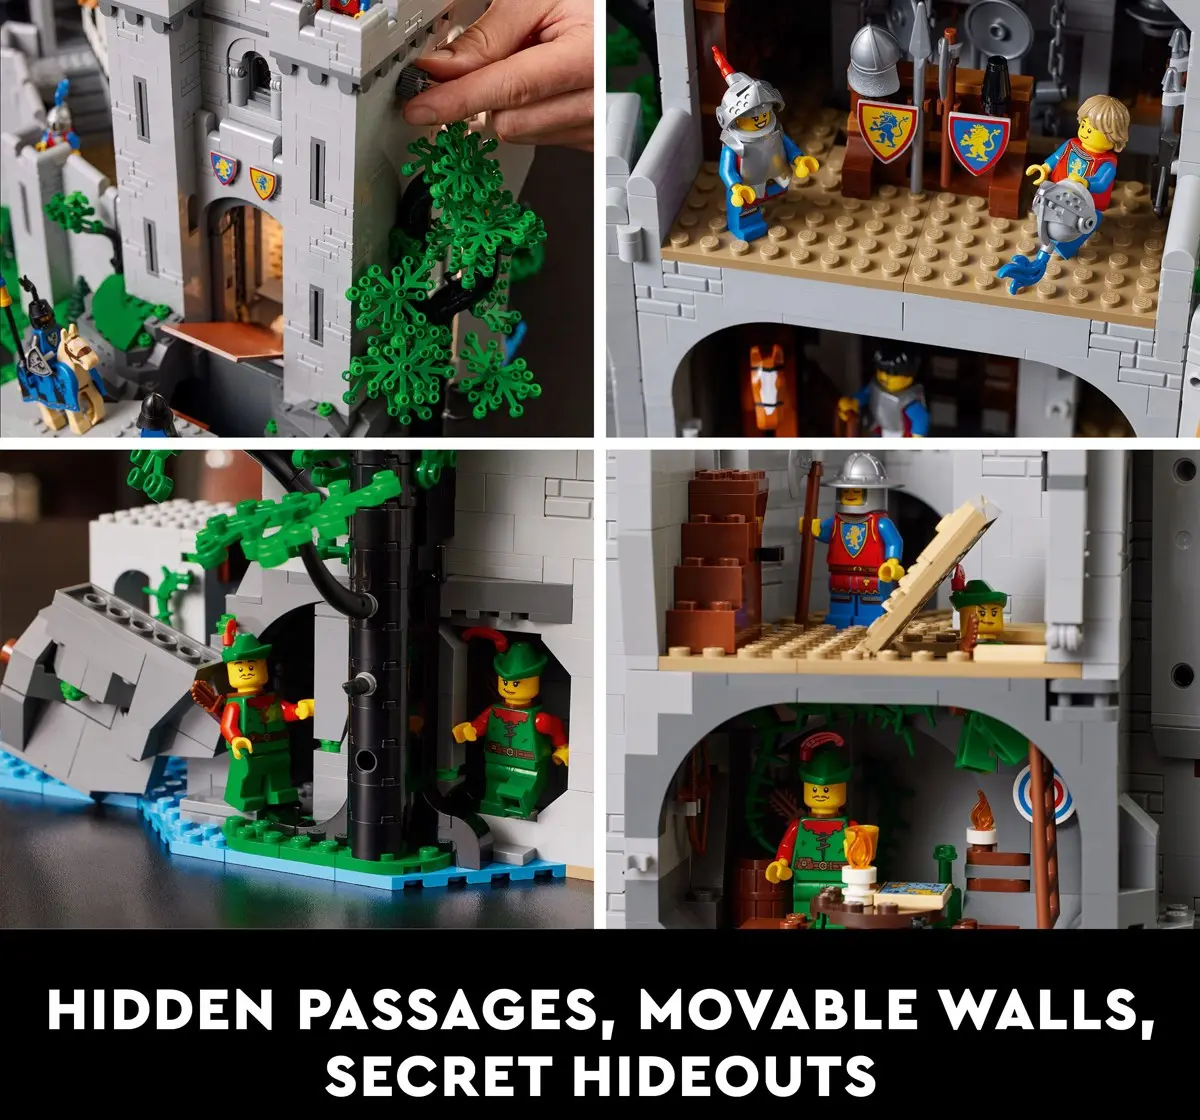 LEGO Lion Knights’ Castle 10305 Building Kit 4,514 Pieces Multicolour 18Y+